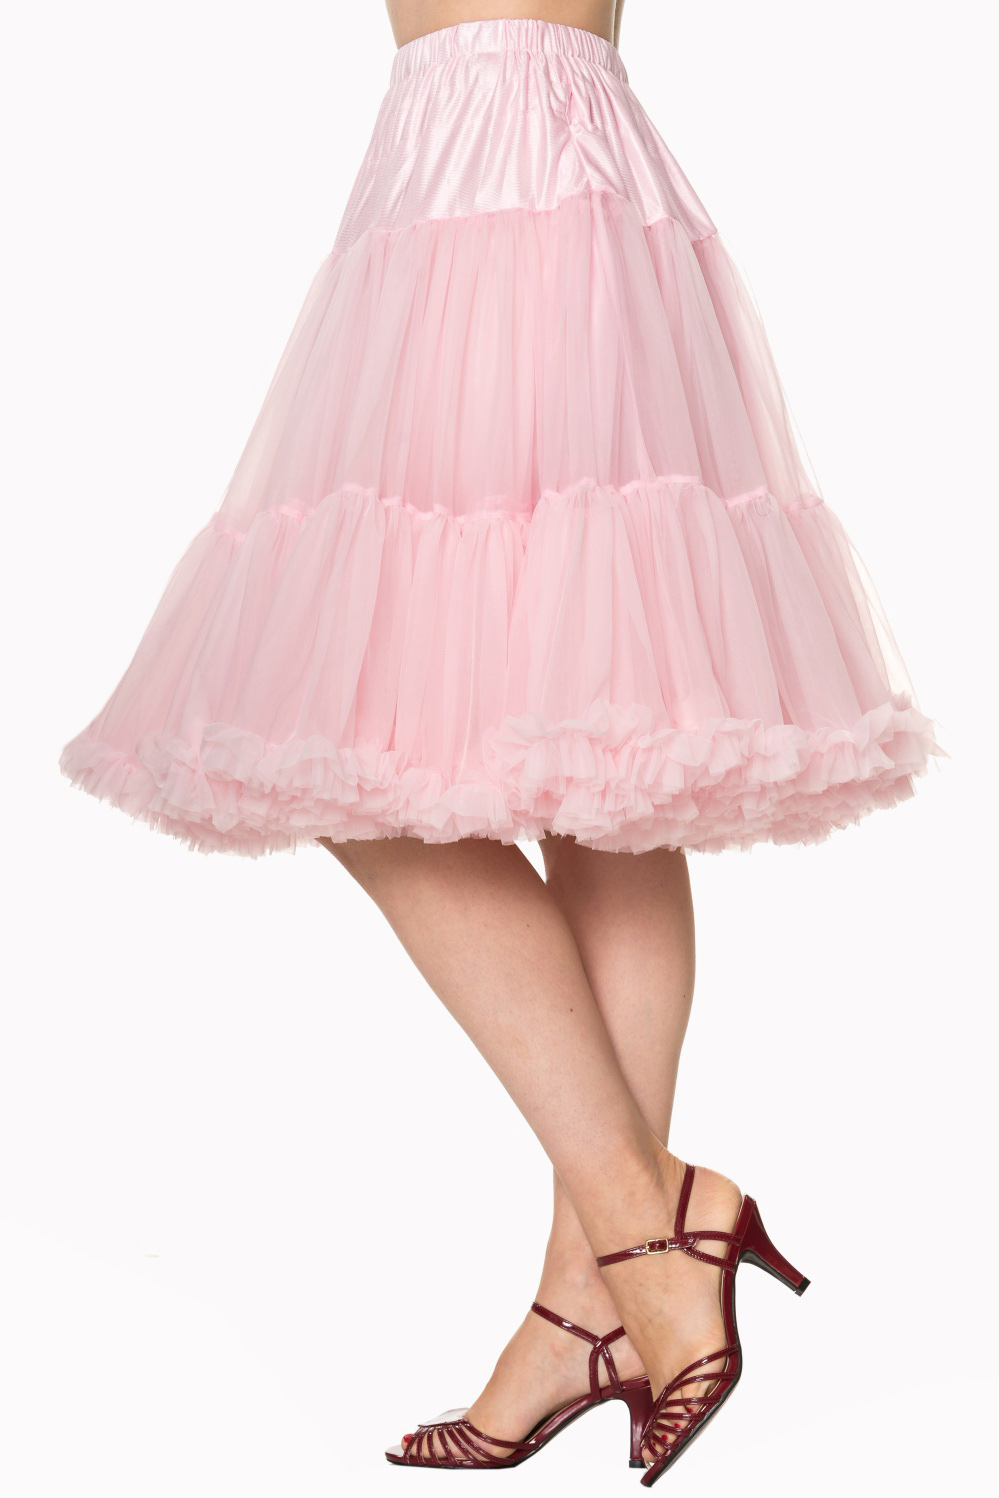 Banned Retro 50s Starlite Light Pink Petticoat